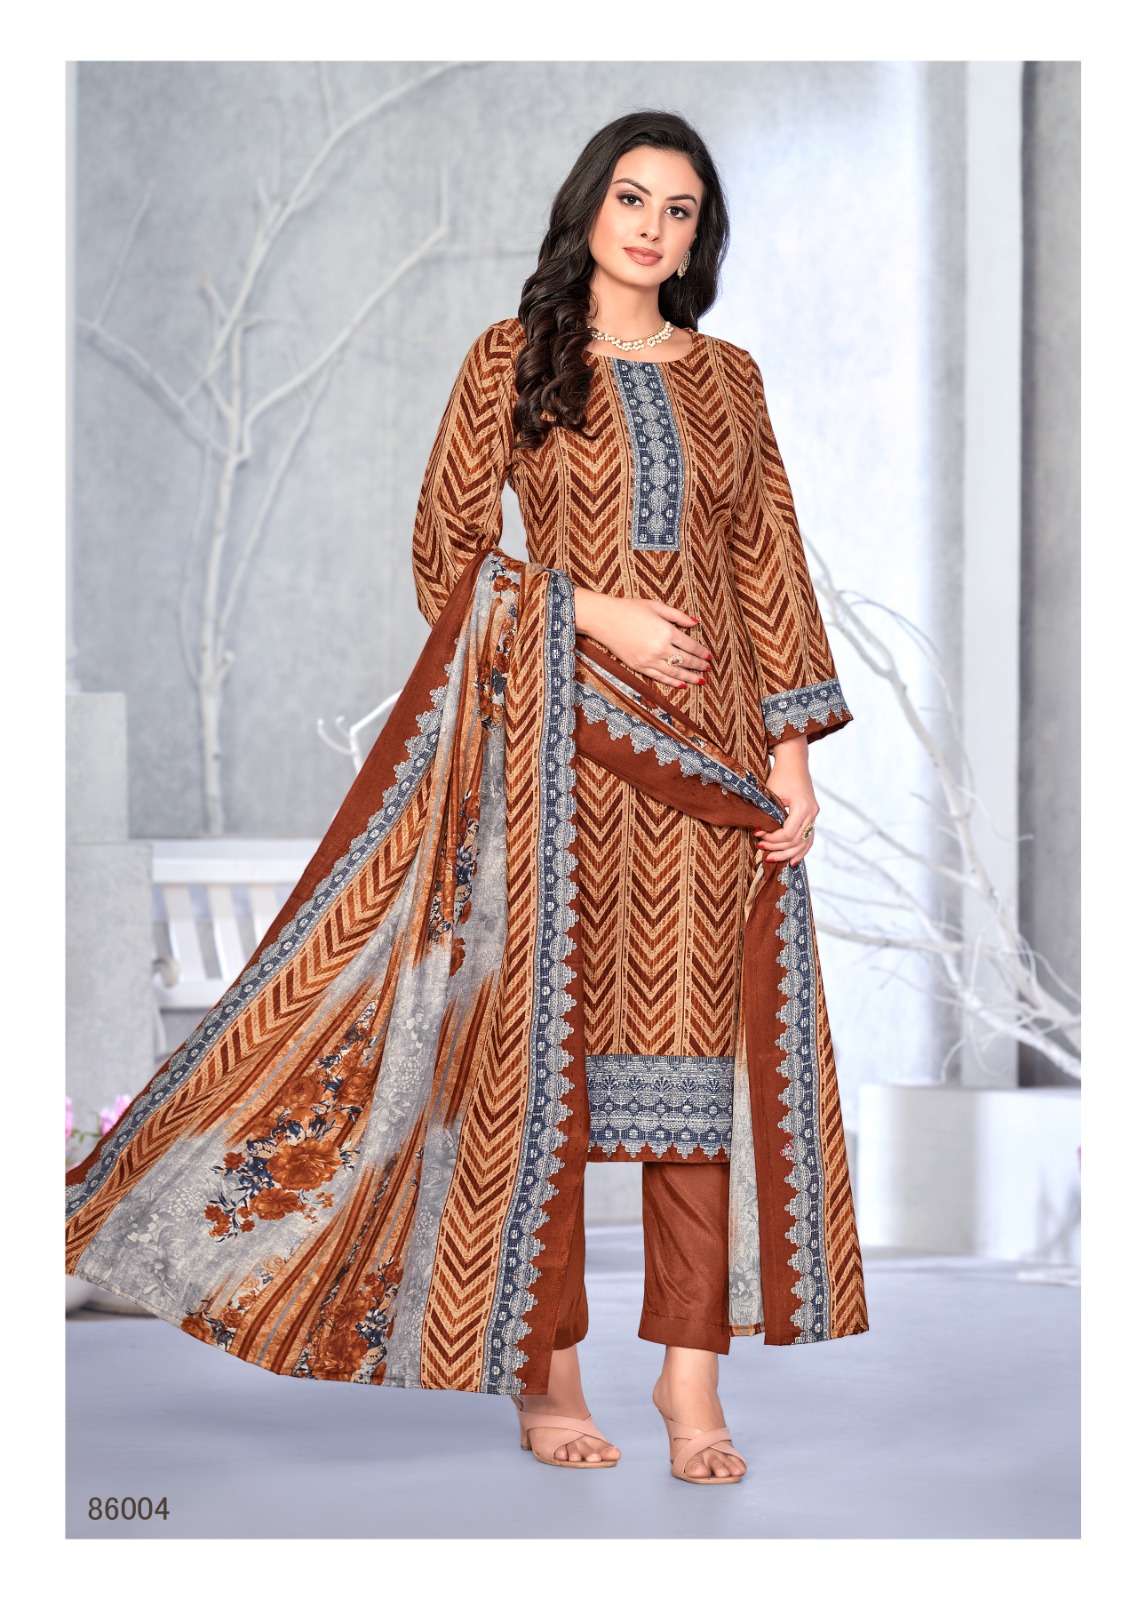 skt suits woolen queen 86001-86008 series latest festivewear designer salwar kameez wholesaler surat gujarat